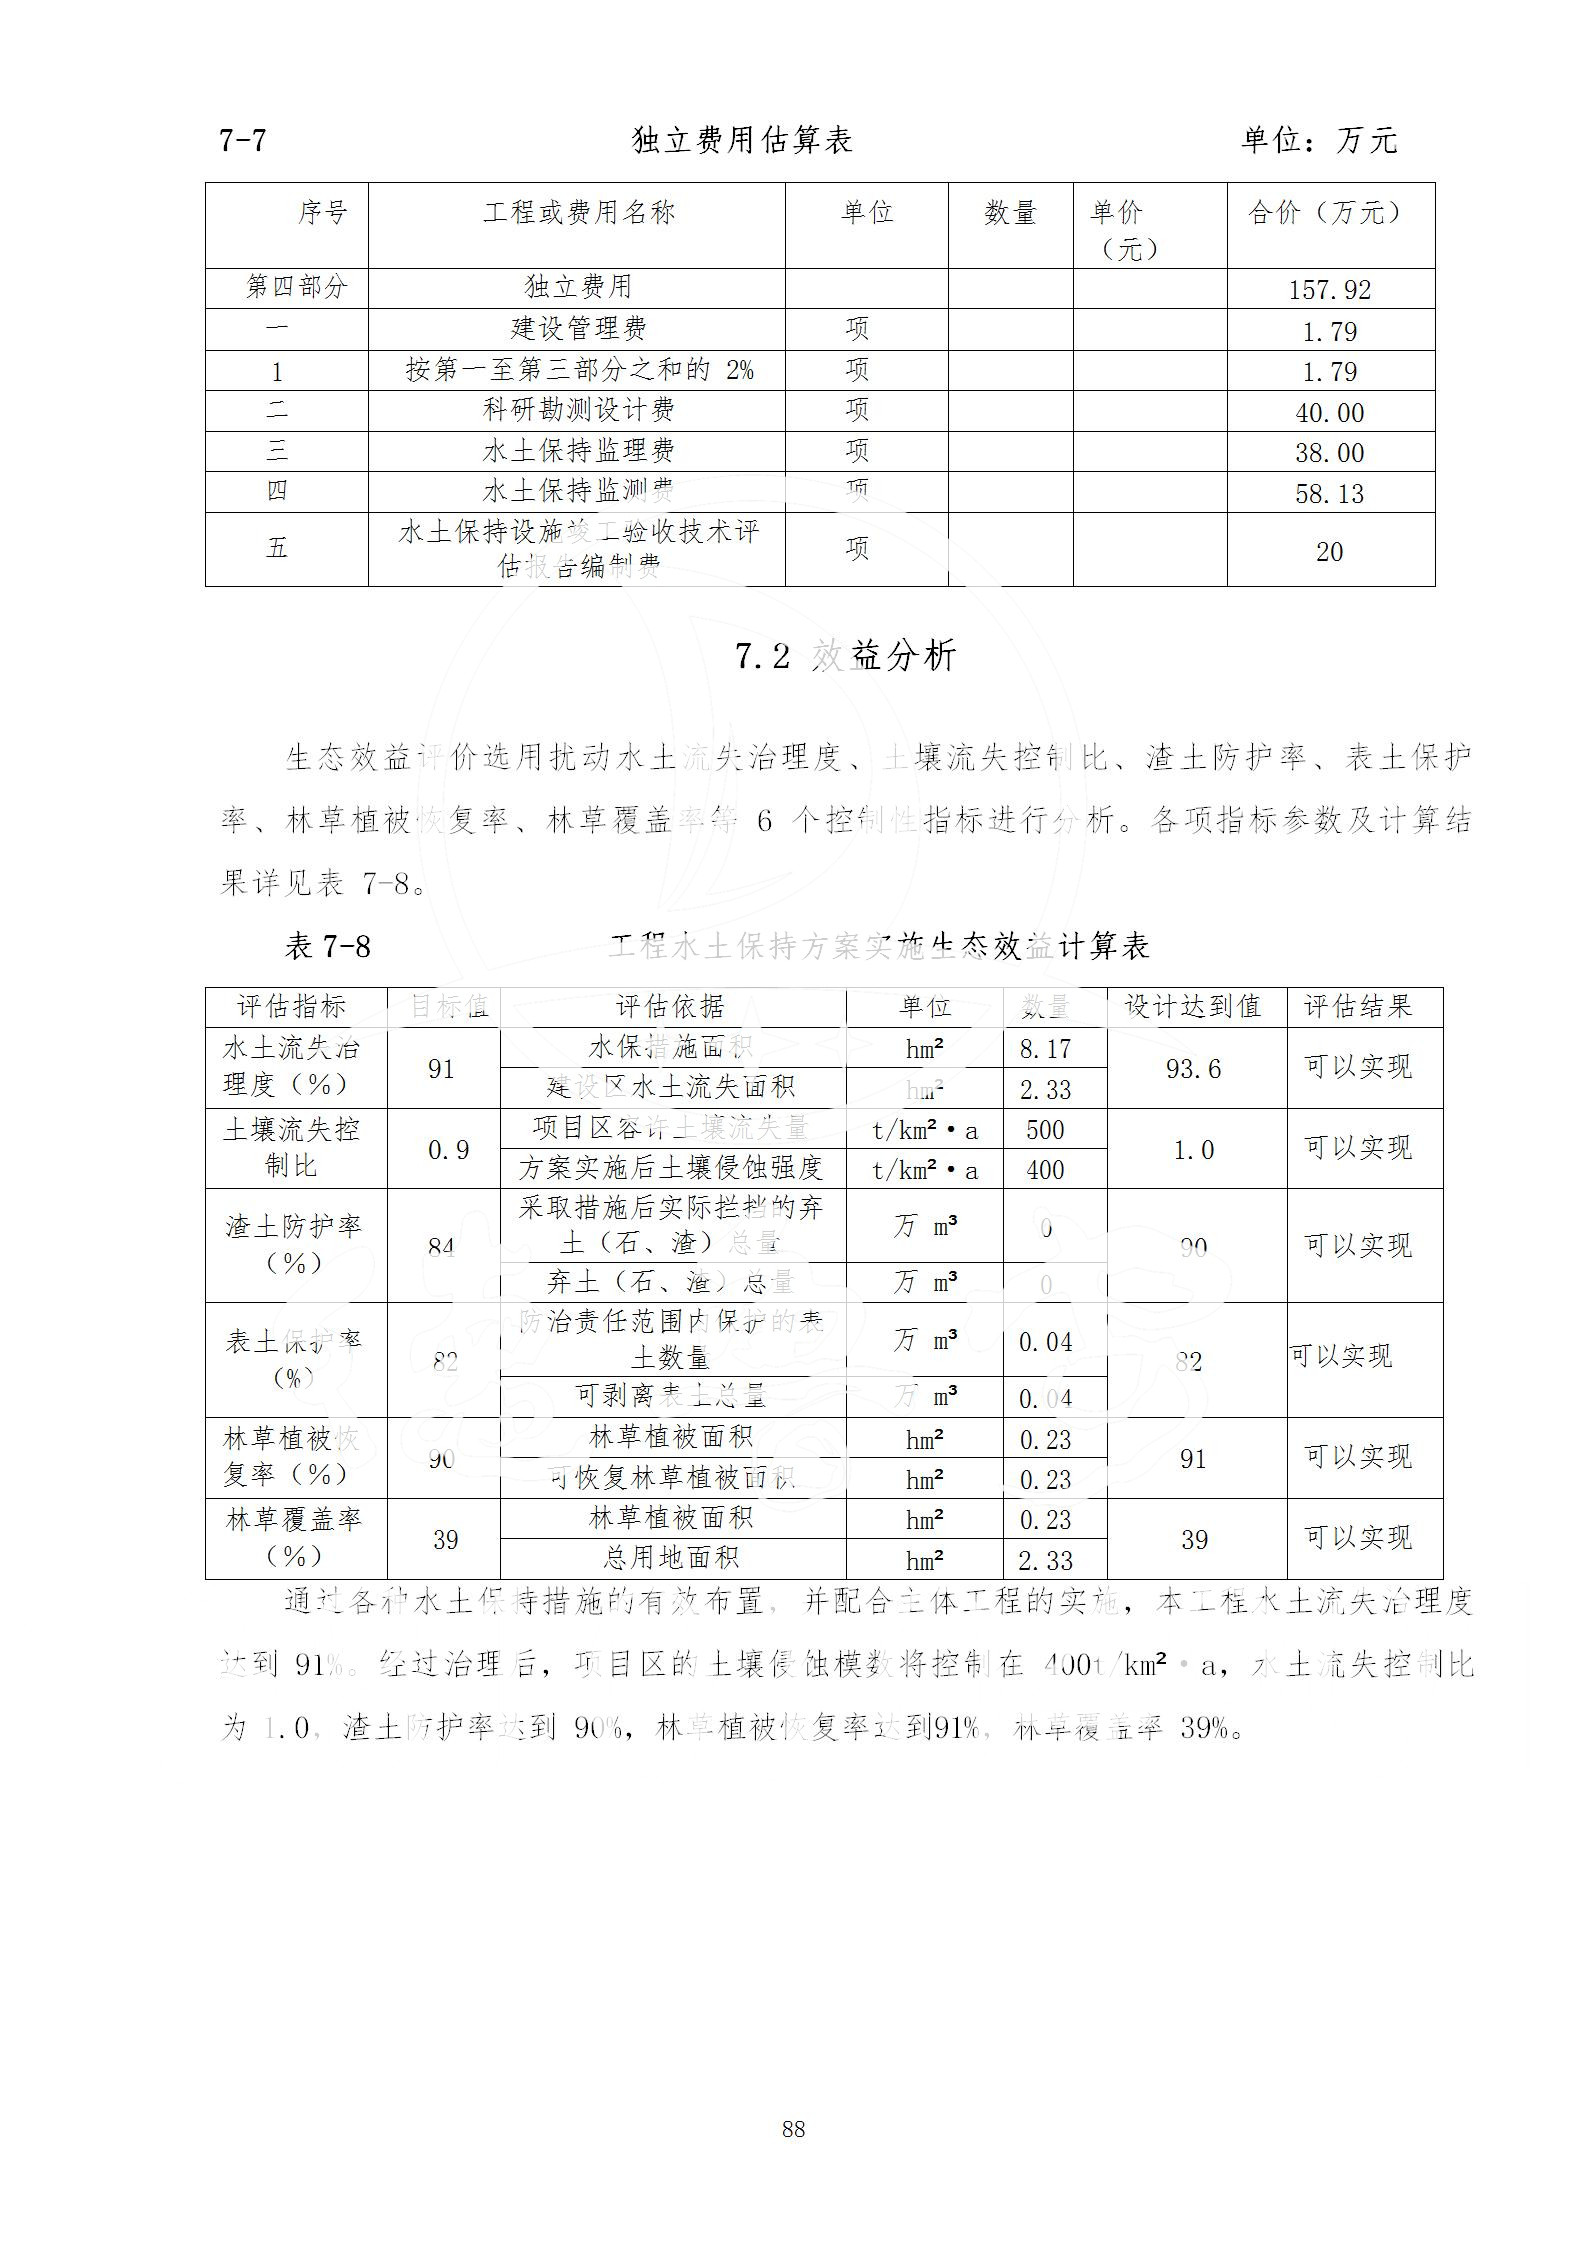 广东省大圣寺水土保持报告  修改稿5_88.jpg